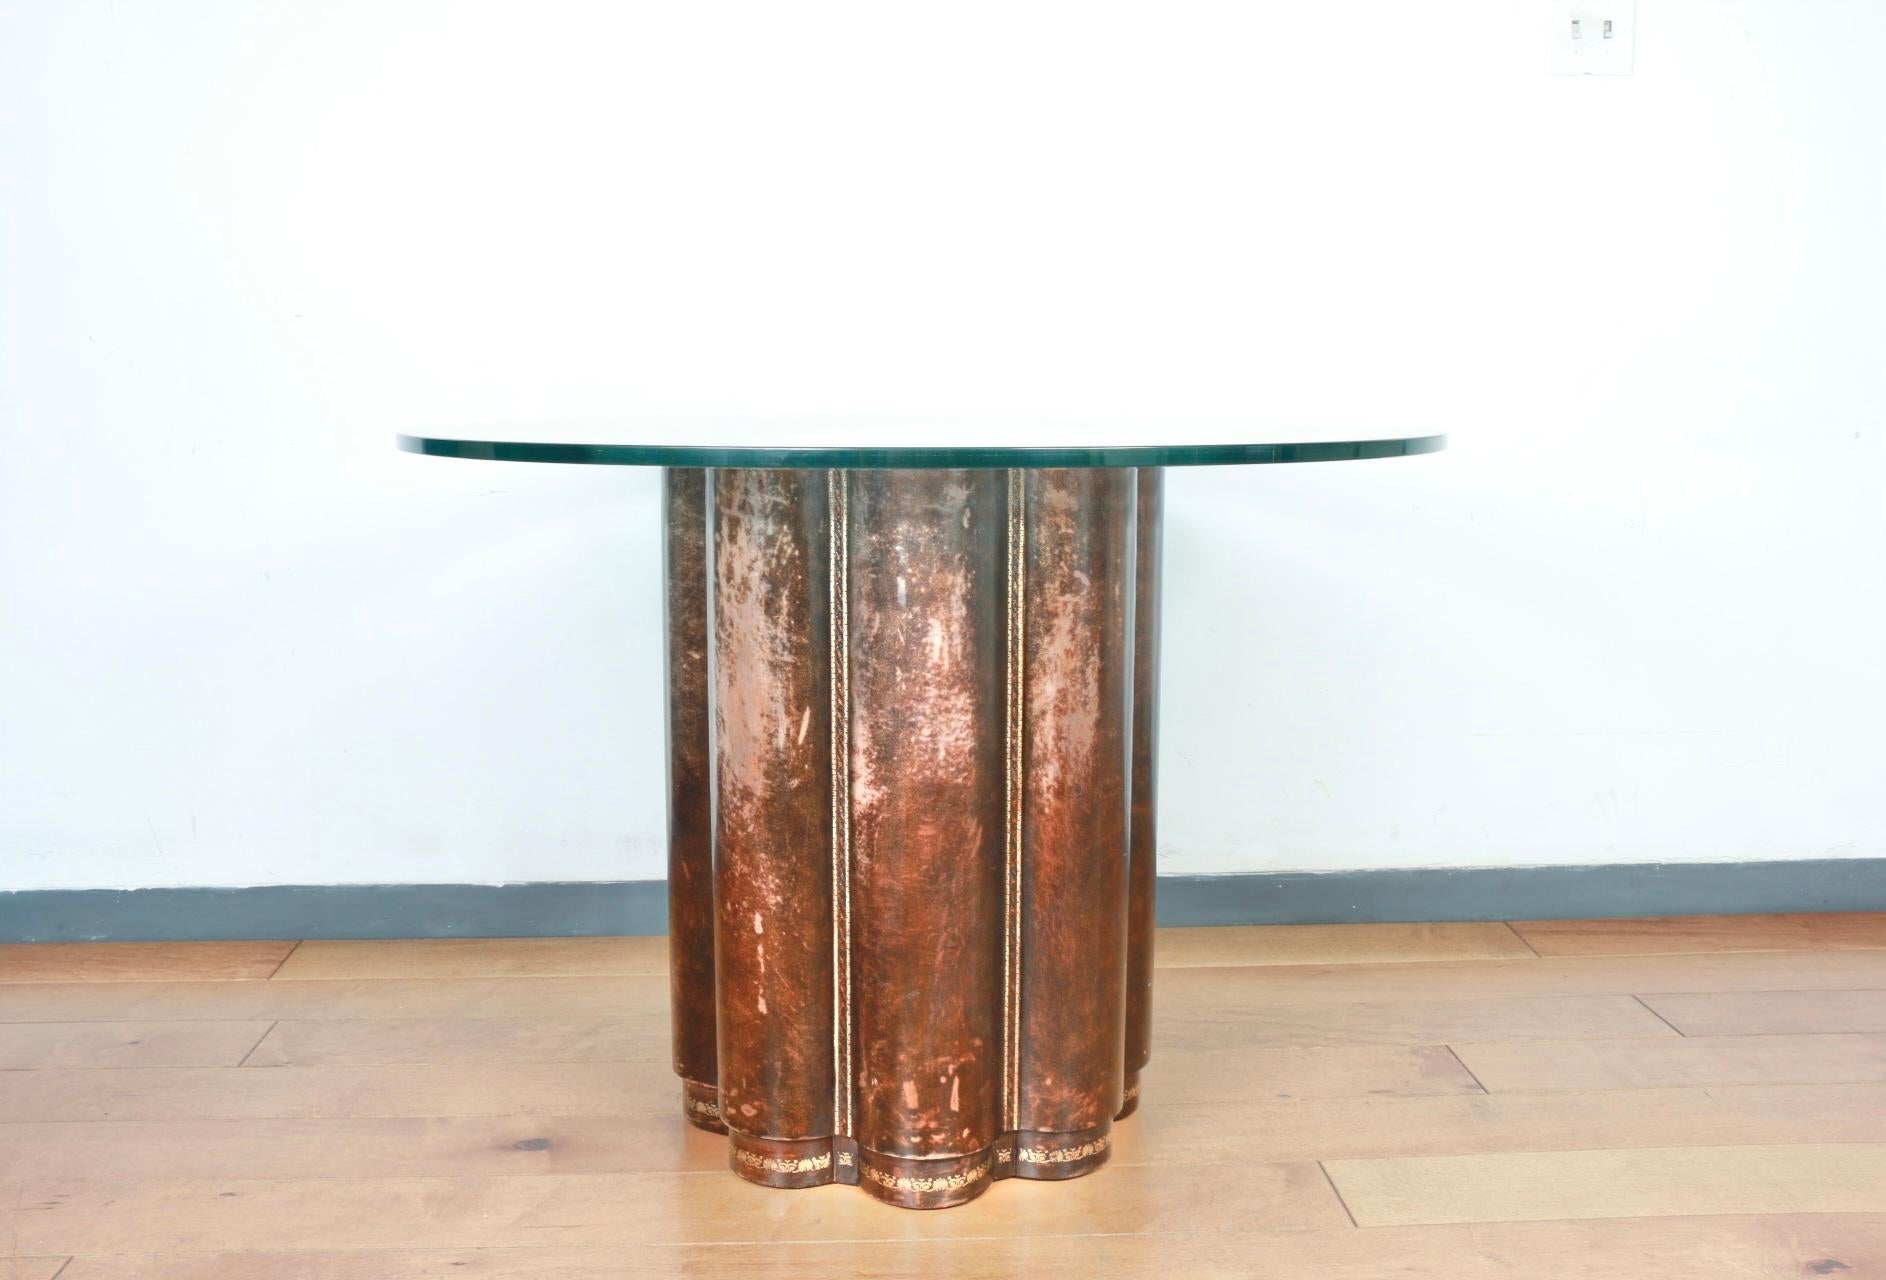 Magnifique base de table centrale en cuir avec plateau rond en verre. La base en cuir est ornée d'accents dorés. Pas de dommages sur la base ou sur le plateau en verre. Idéal et élégant pour toutes les entrées.